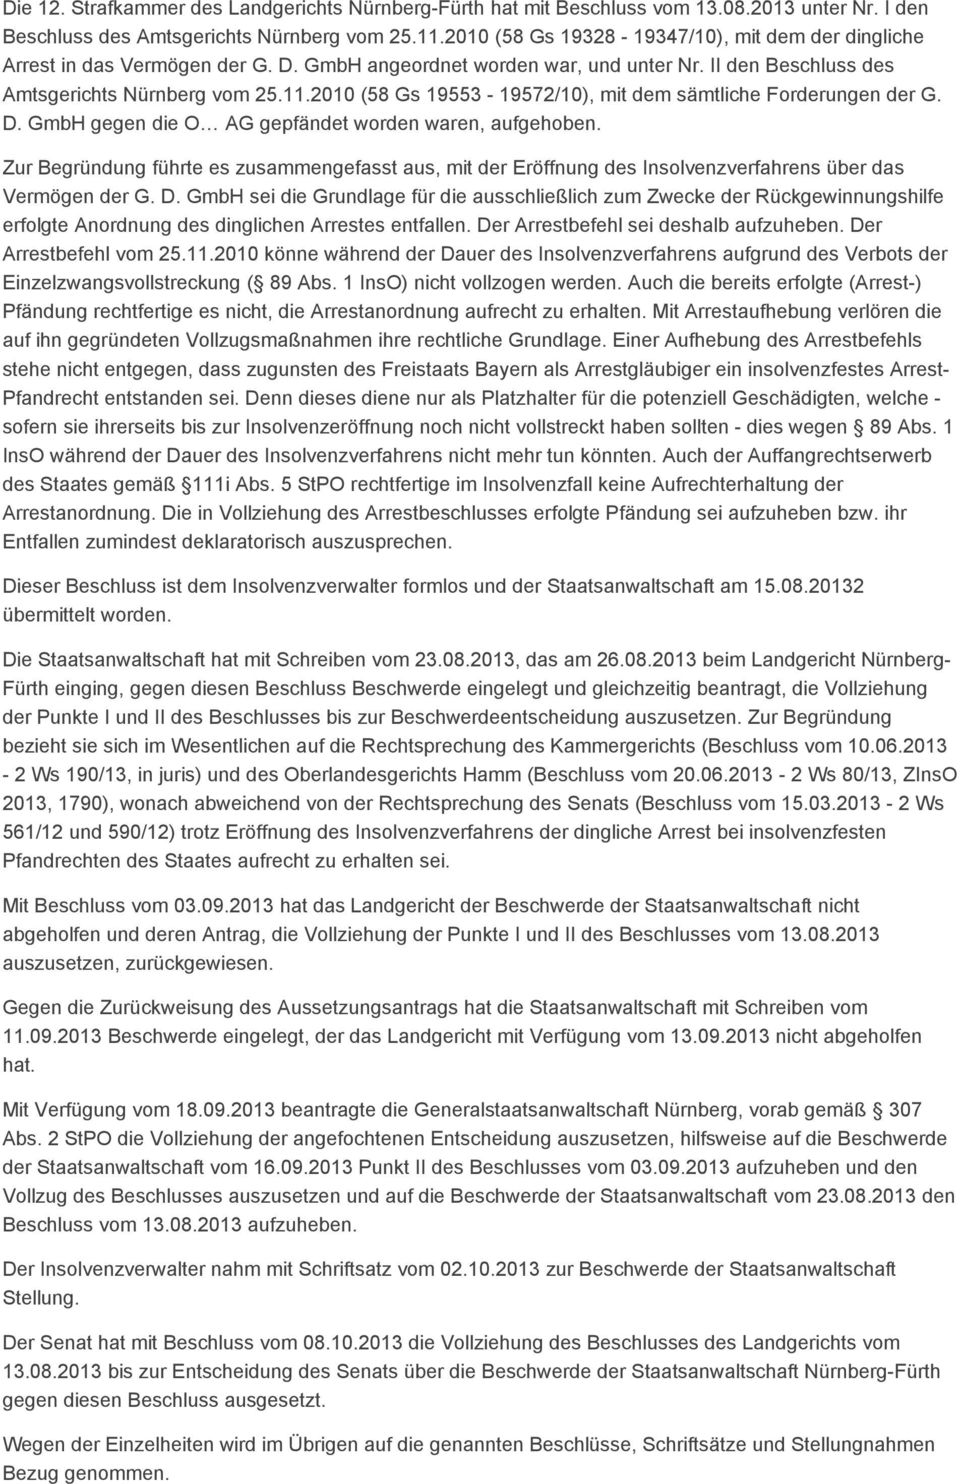 2010 (58 Gs 19553-19572/10), mit dem sämtliche Forderungen der G. D. GmbH gegen die O AG gepfändet worden waren, aufgehoben.